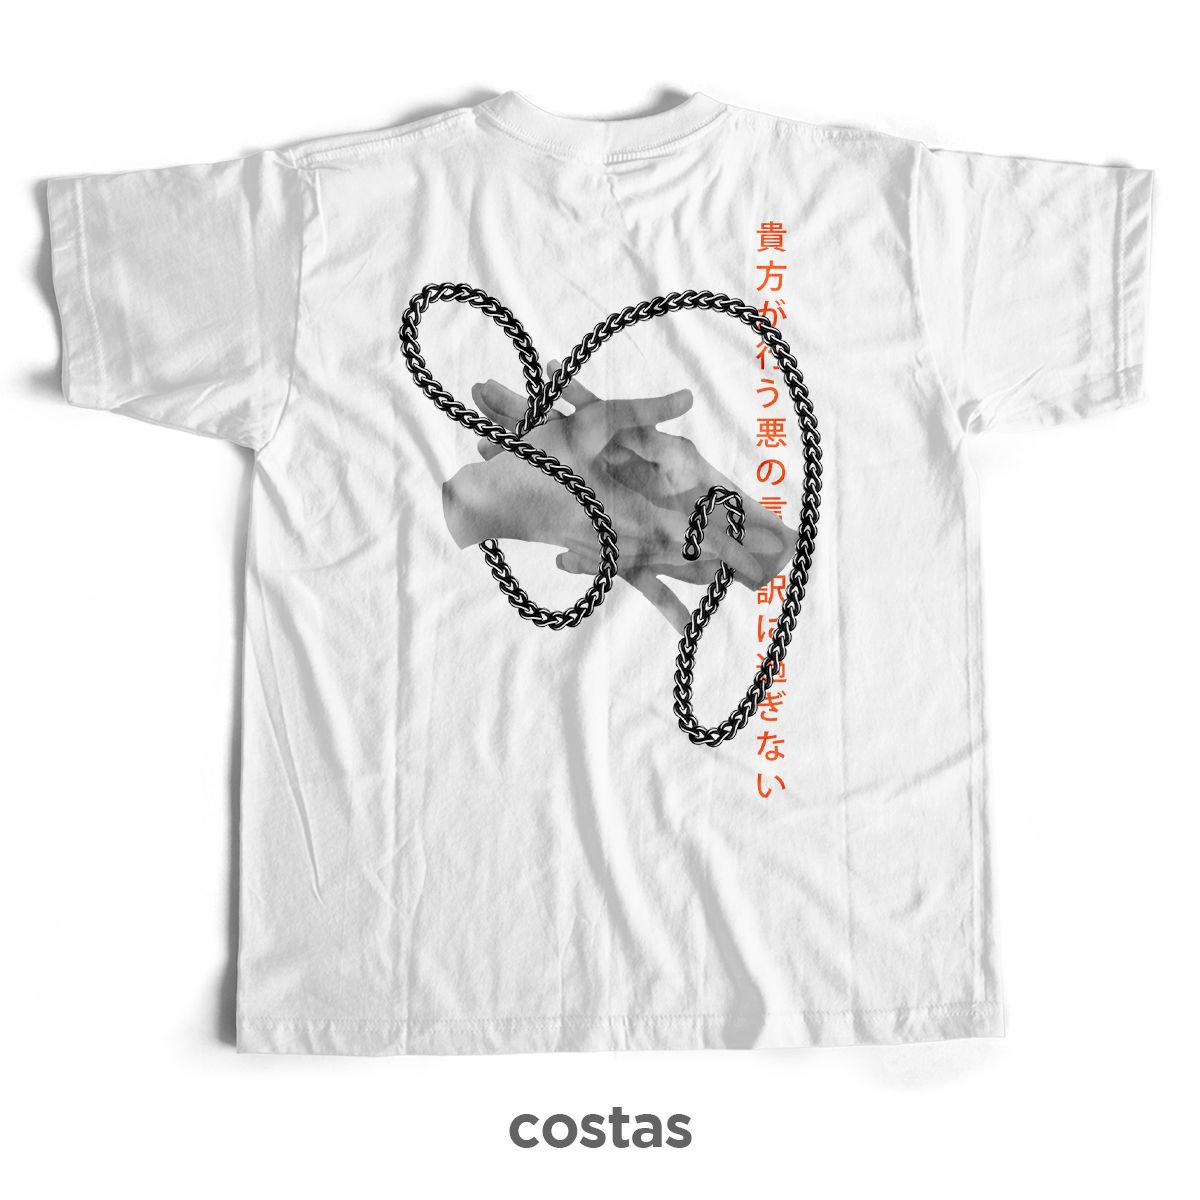 Nome do produto: Camiseta Branca - Makima (Costas)